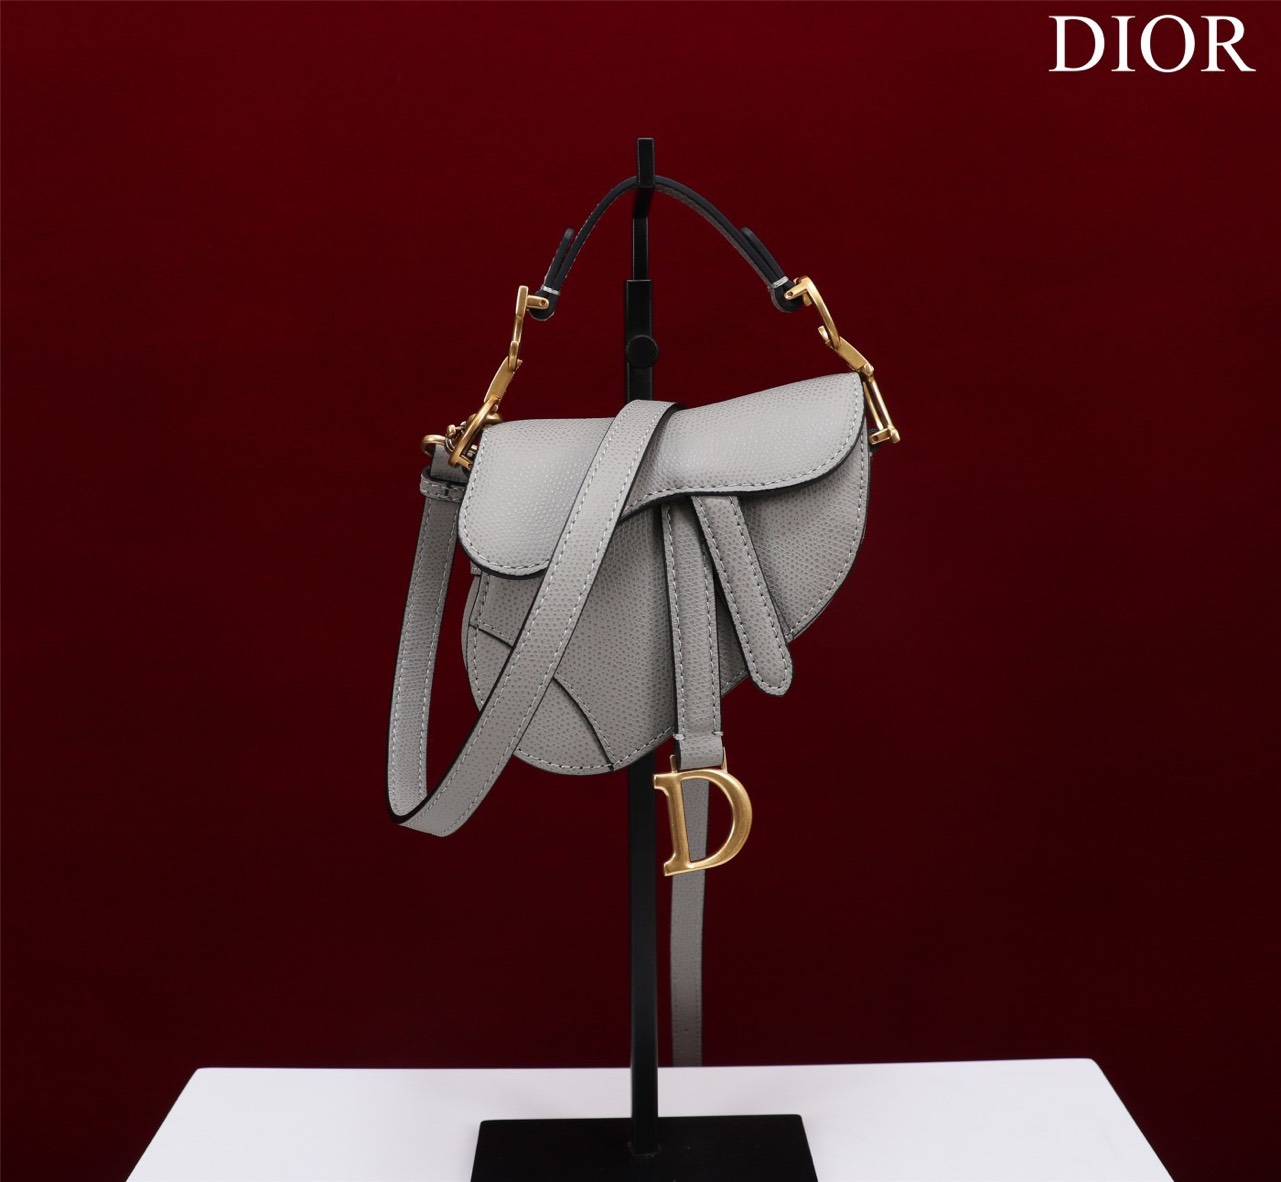 Tổng Hợp Các Mẫu Túi Xách Dior Siêu Cấp Mini Saddle Bag CD Màu Đen Size 12 x 7.5 x 5cm